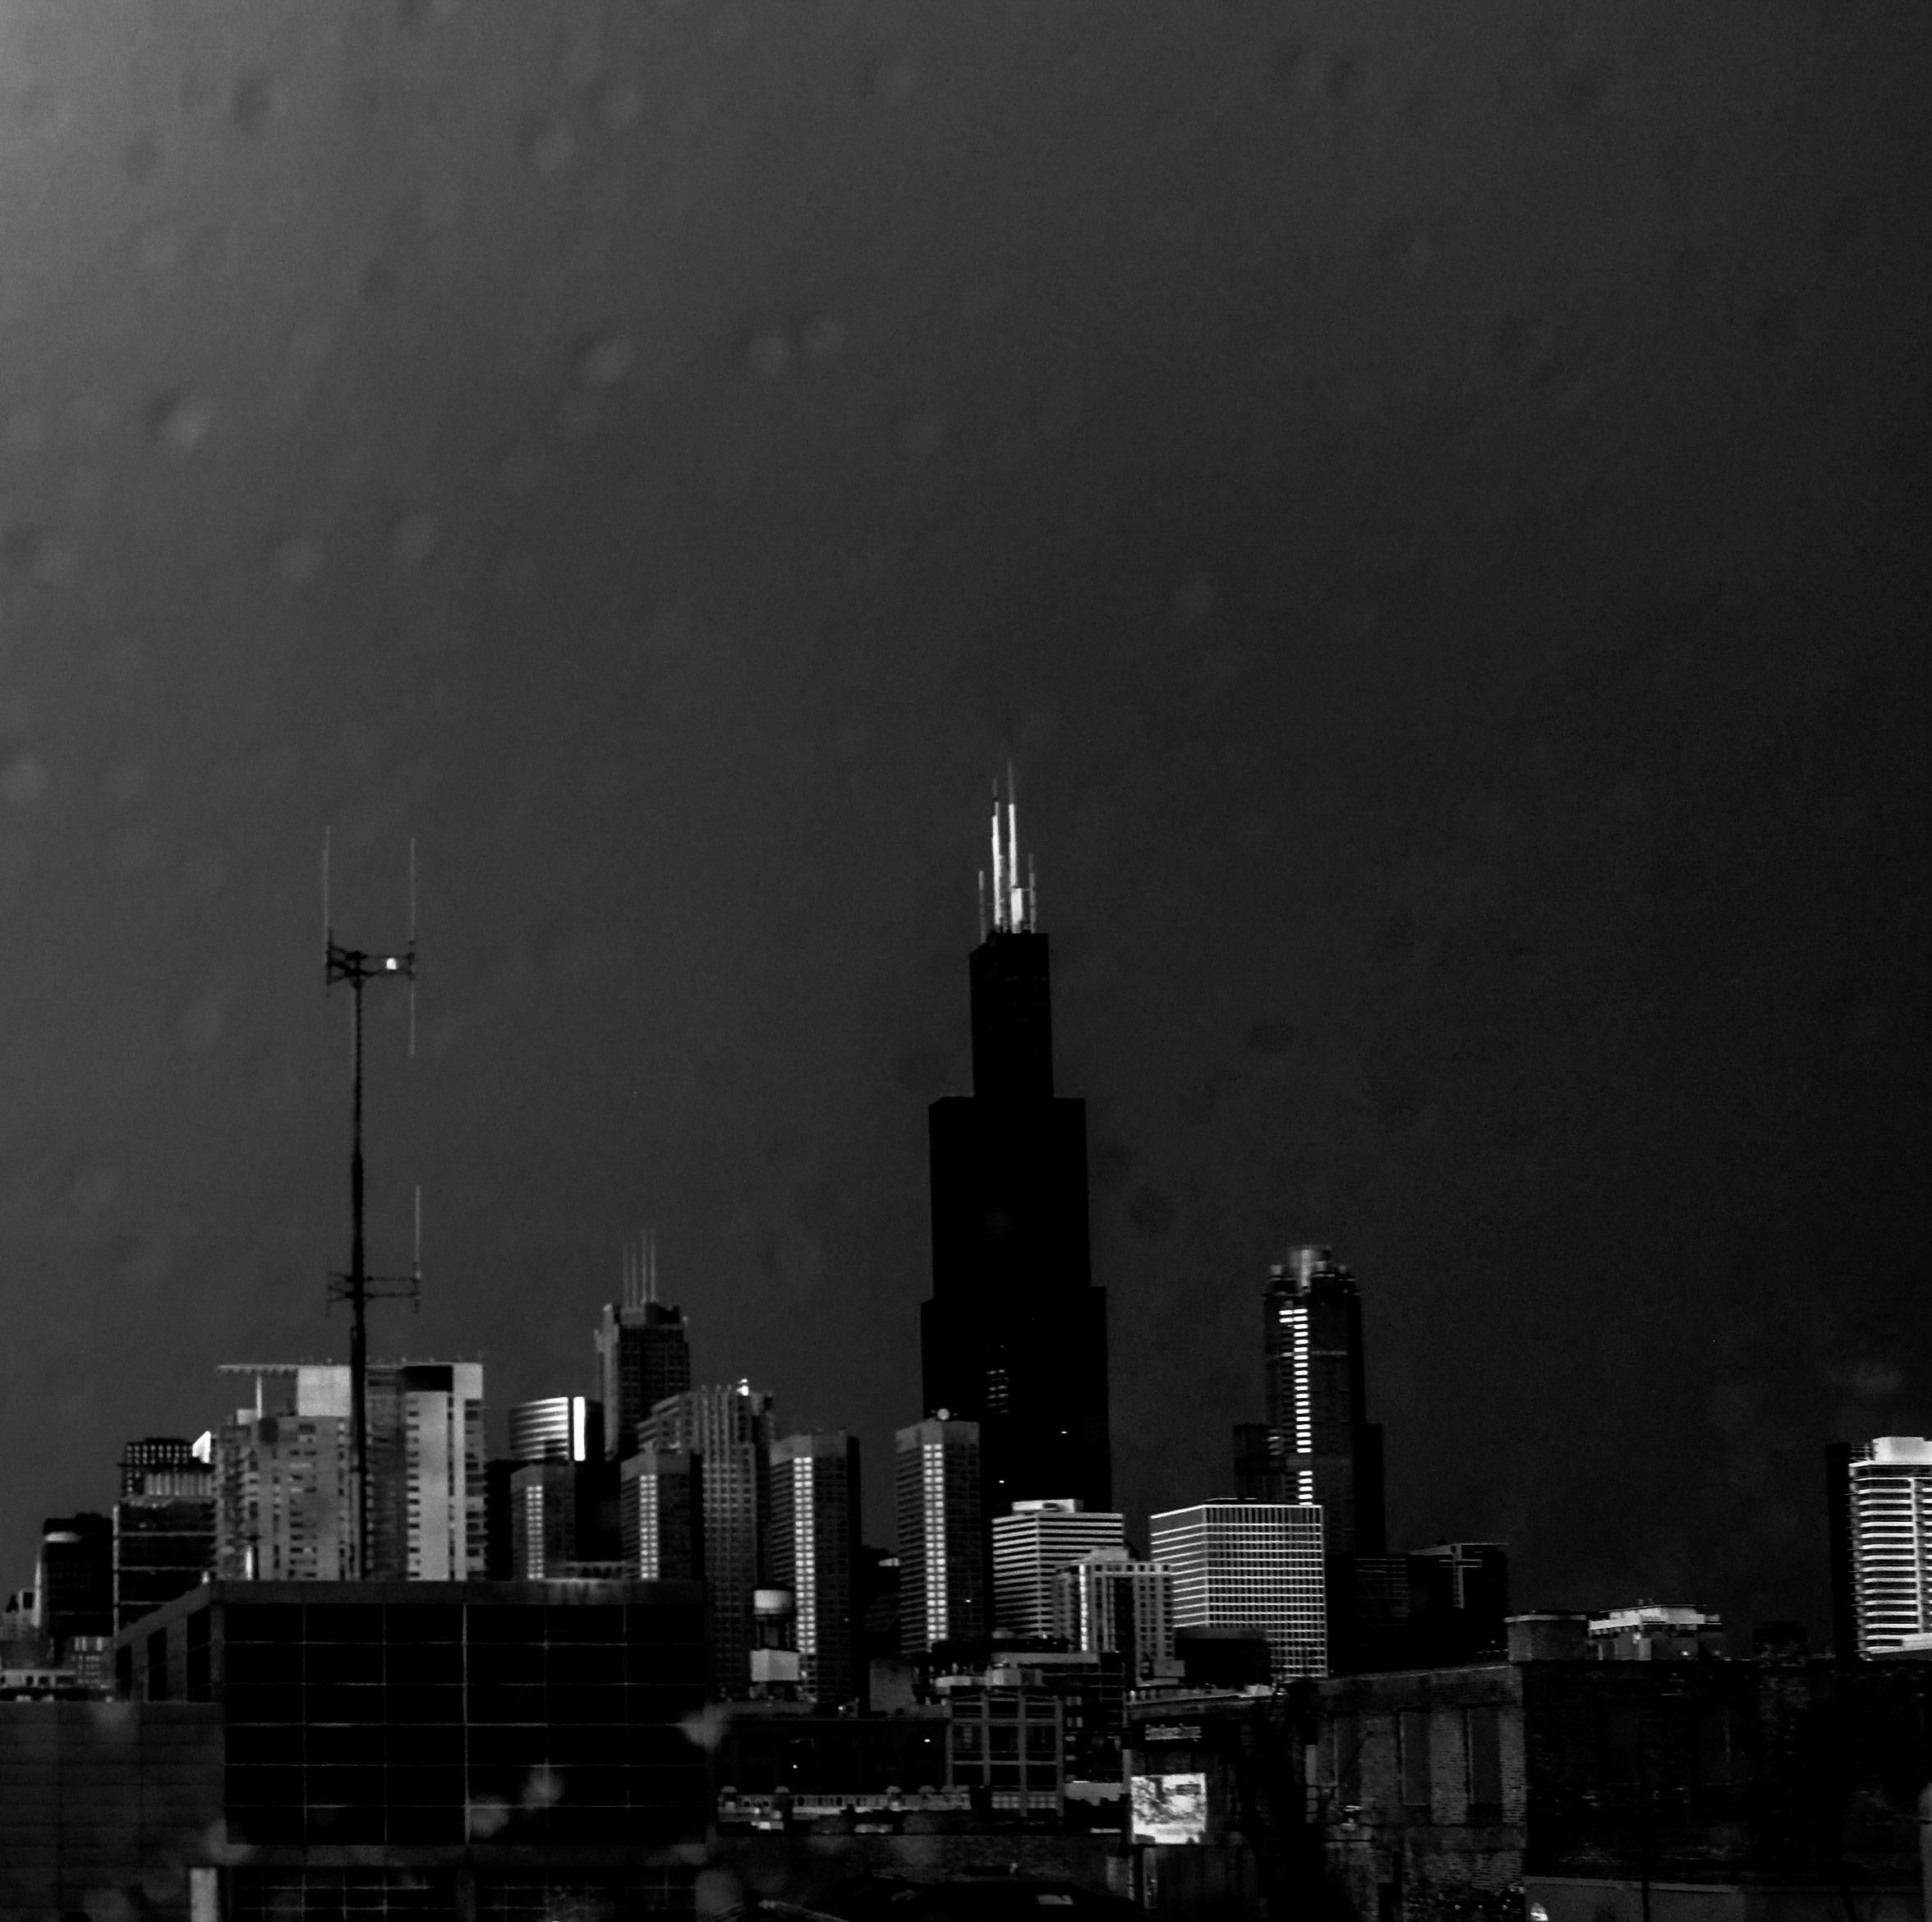 Lightning, Chicago, Großformatige Schwarz-Weiß-Fotografie, mattiert und gerahmt – Photograph von Kirill Polevoy